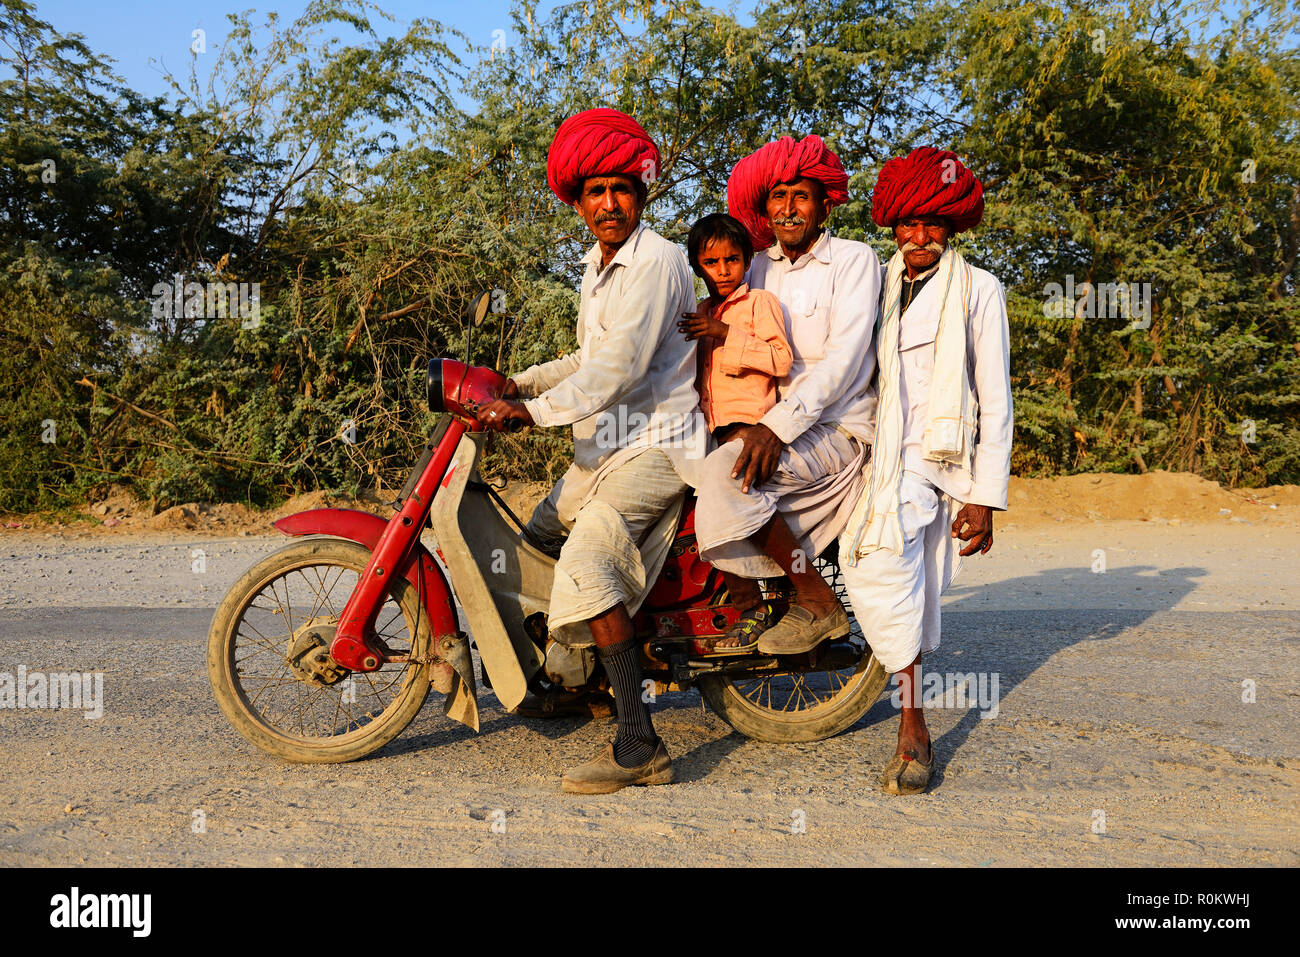 Cuatro hombres de tres generaciones viajar juntos en una motocicleta, Rajasthan, India Foto de stock